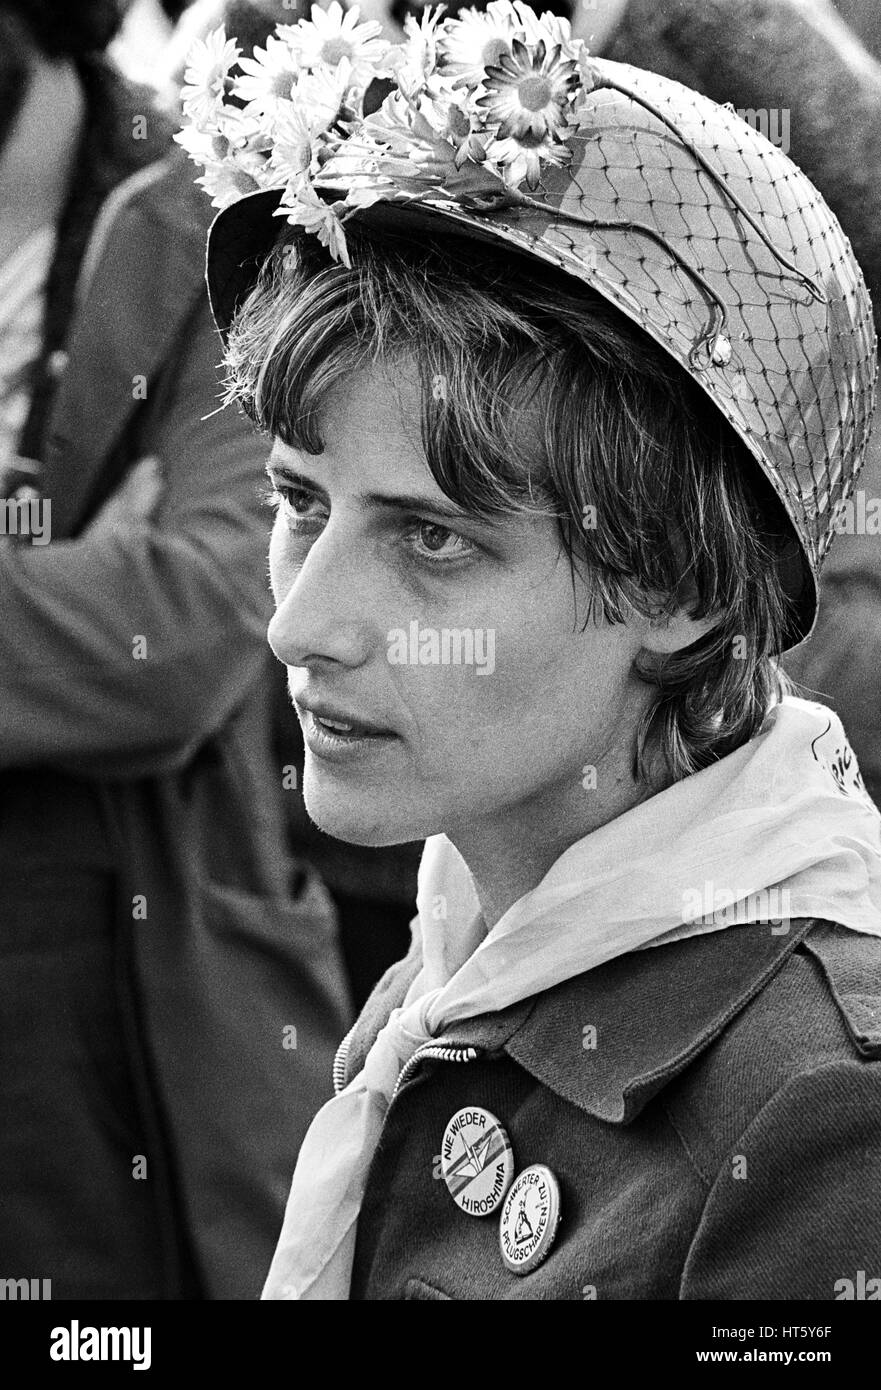 Mutlangen, Allemagne, 01.Sept.1983 : PETRA KELLY (* 29 novembre 1947, † probablement le 1er octobre 1992), co-fondateur du Parti Vert allemand 'Die Gruenen' avec un casque d'acier décorée sur une manifestation à la paix, l'Allemagne Mutlangen Banque D'Images